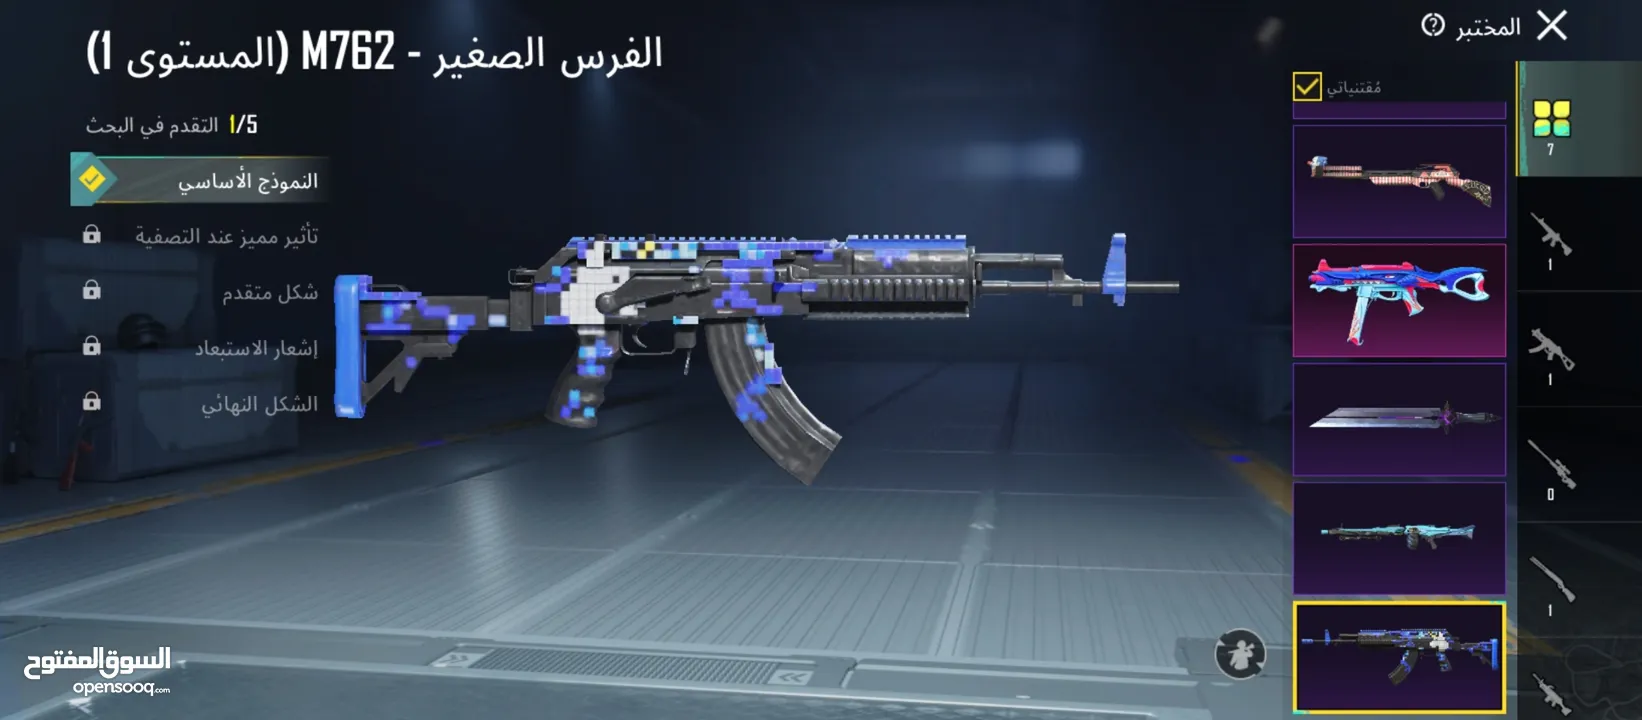 سعر نهائي للبيع وجه لوجه فقط في عمان بسعر حرق حرق فيه 35 مثك و 7 اسلحه تطوير و 3 متيريل و ال m7